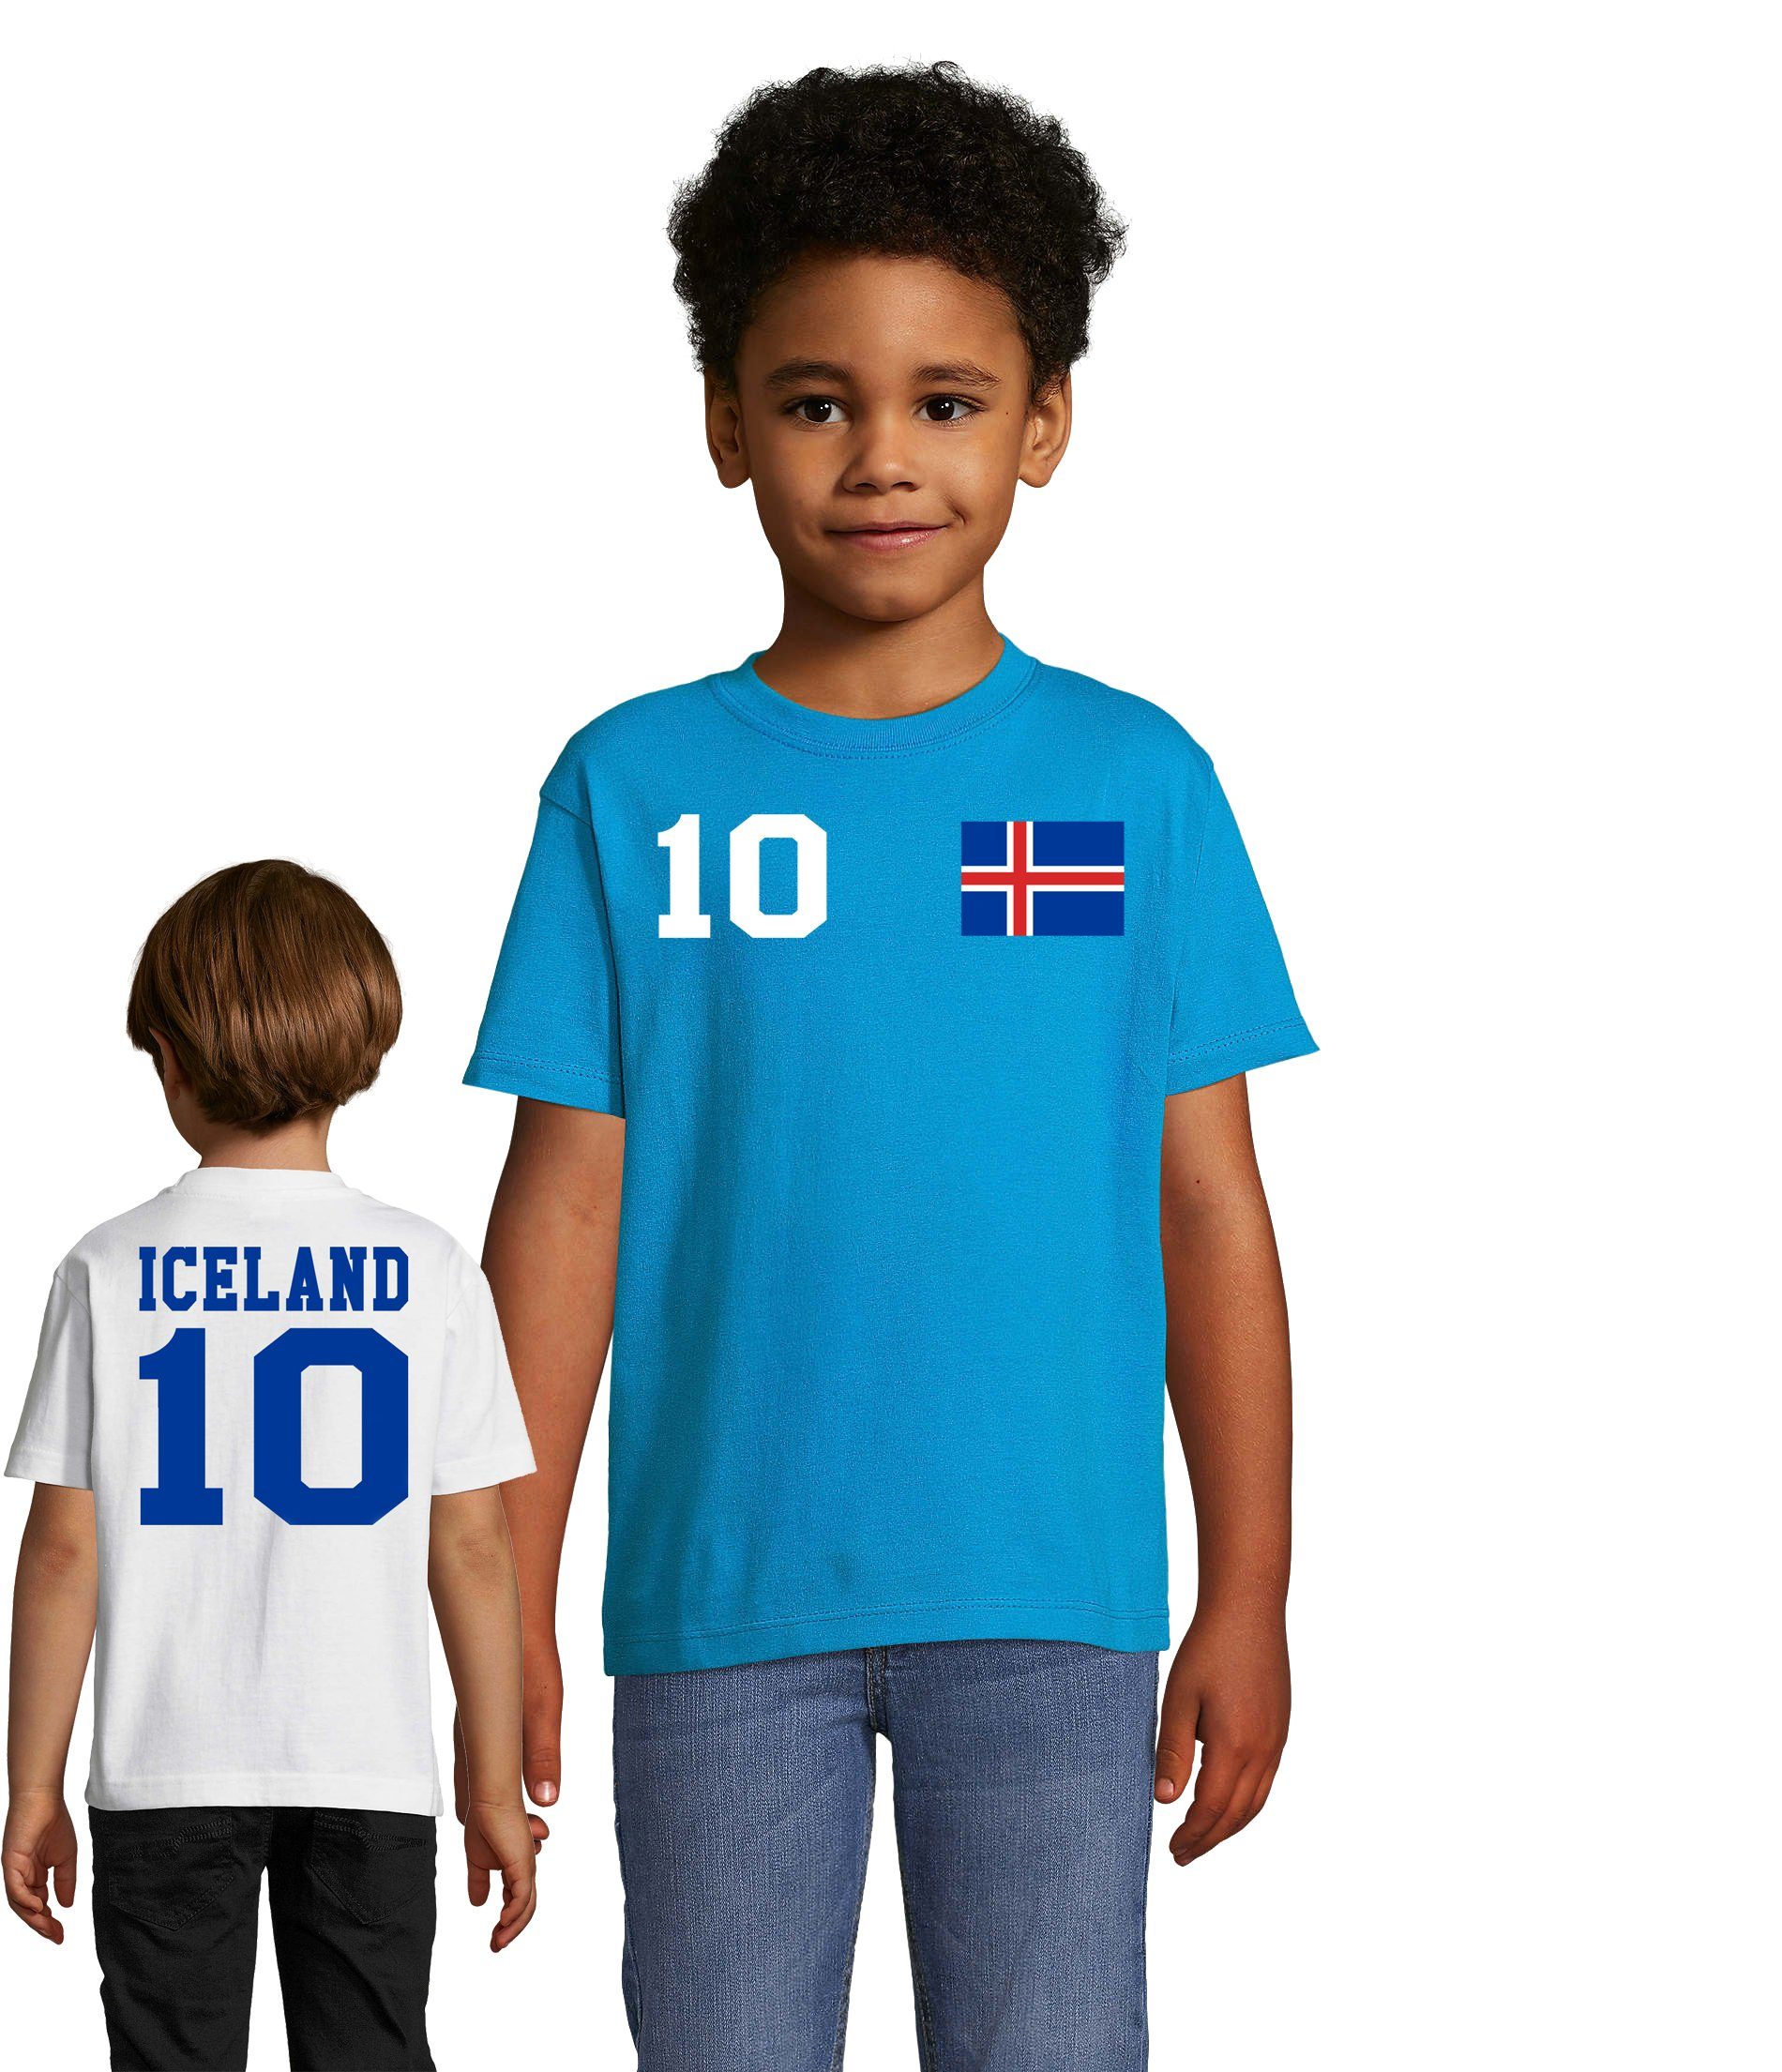 Blondie & Brownie T-Shirt Kinder Island Iceland Sport Trikot Fußball Handball Meister WM EM Weiss/Blau